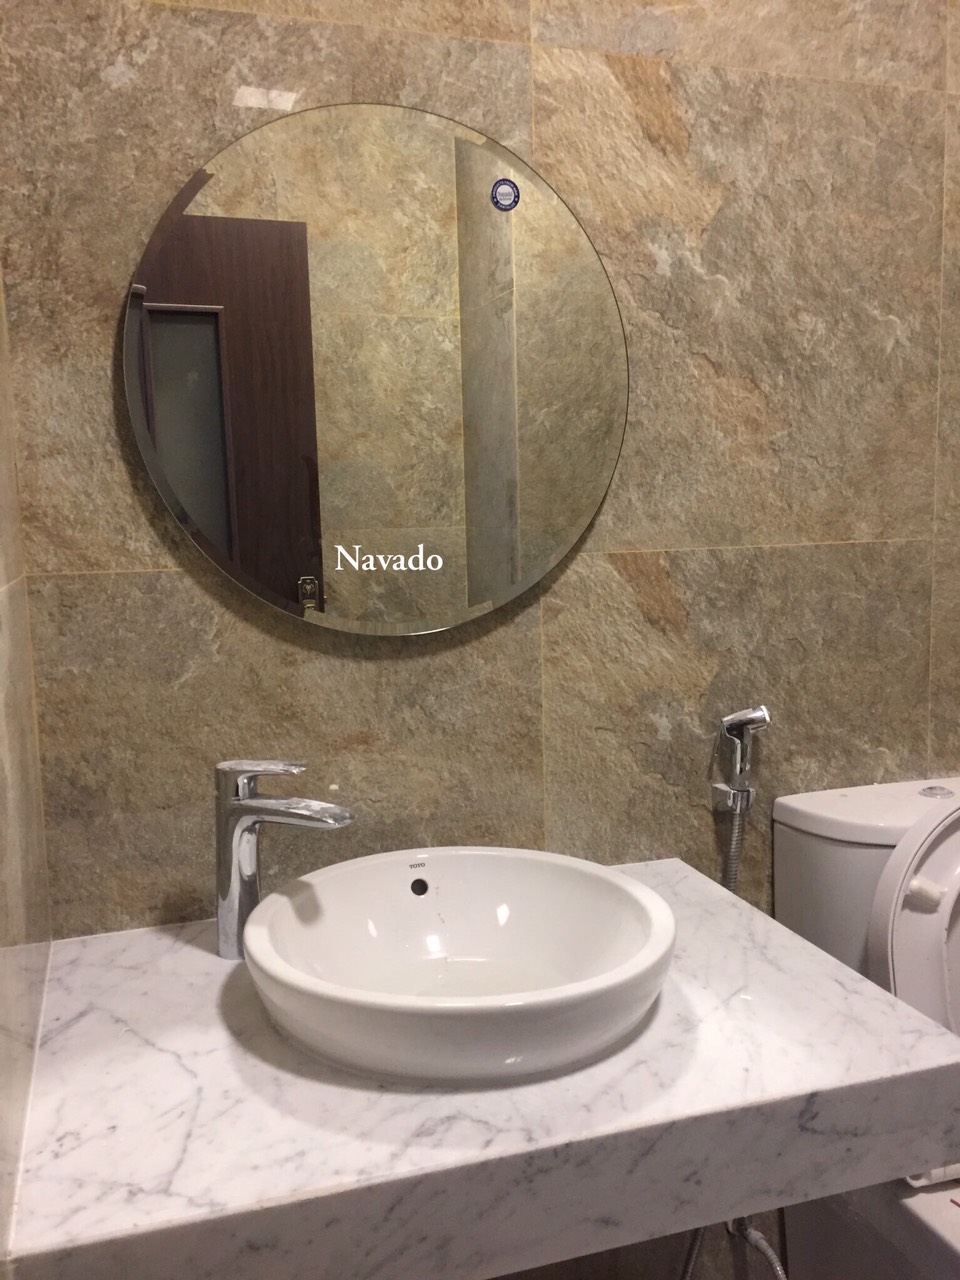 Được trang bị đầy đủ với đèn Led NAV1010C cực kỳ tiên tiến, loại gương phòng tắm Navado này không chỉ trở nên sáng hơn, mà còn đem lại cảm giác thư thái đến với bạn. Với thiết kế đặc biệt và chất liệu cao cấp, chiếc gương này chắc chắn sẽ làm hài lòng những vị khách khó tính nhất.